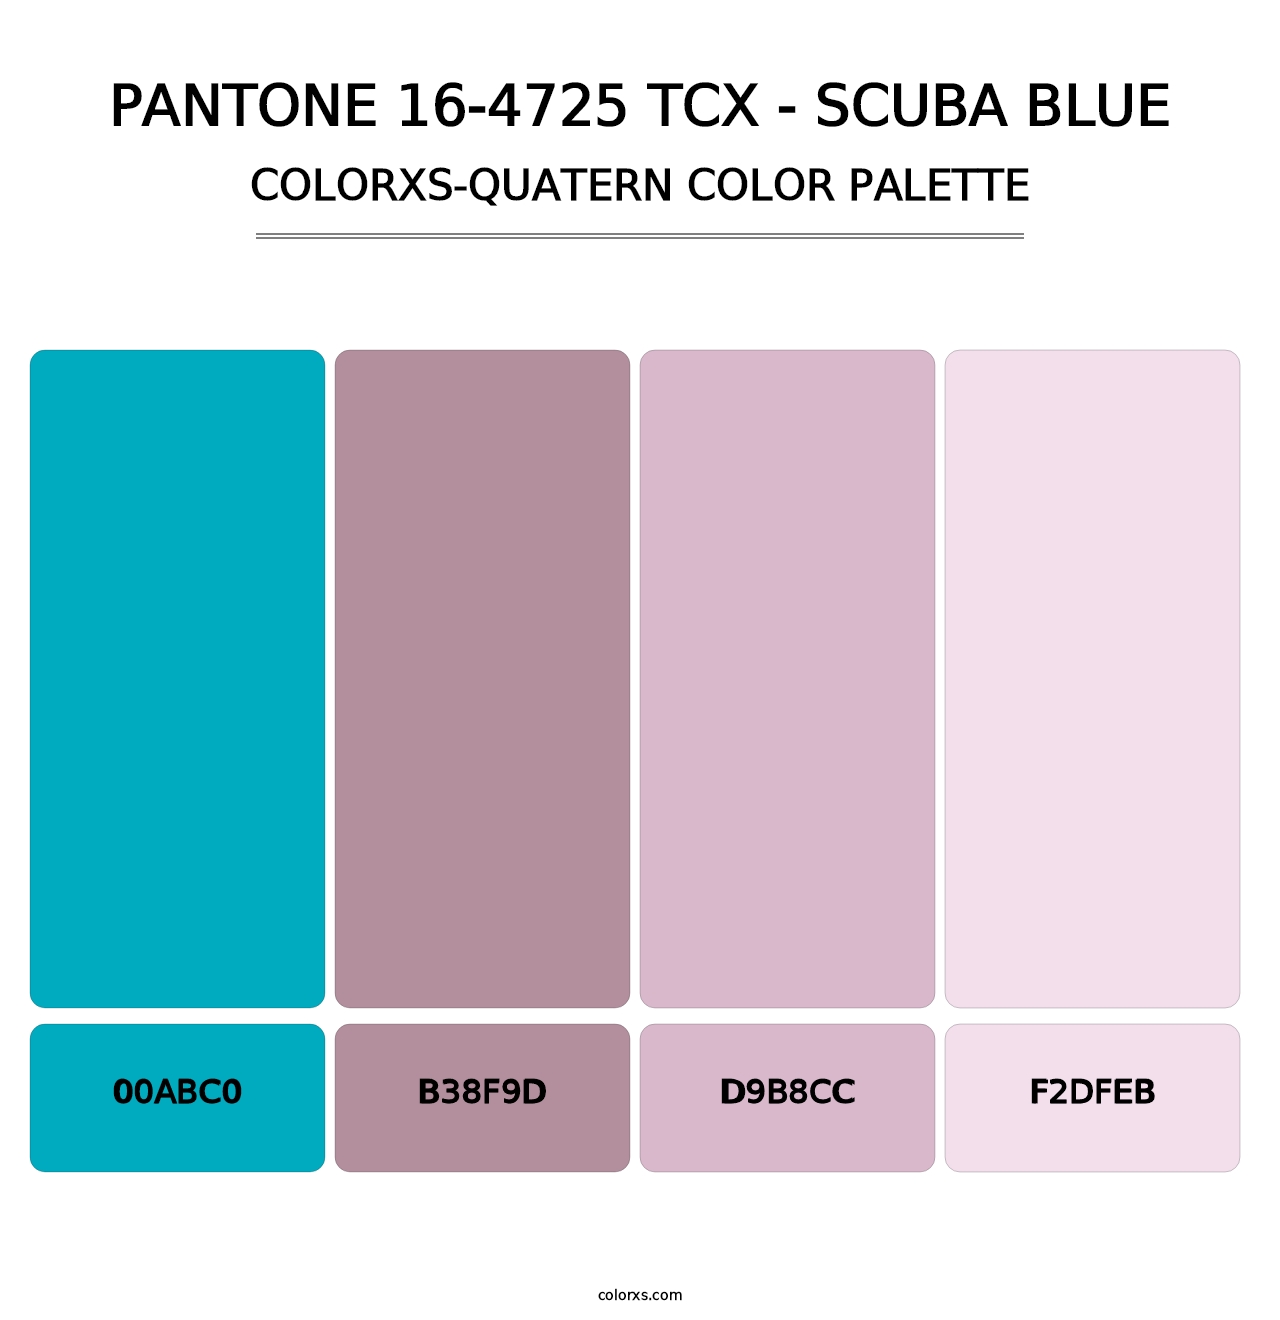 PANTONE 16-4725 TCX - Scuba Blue - Colorxs Quatern Palette